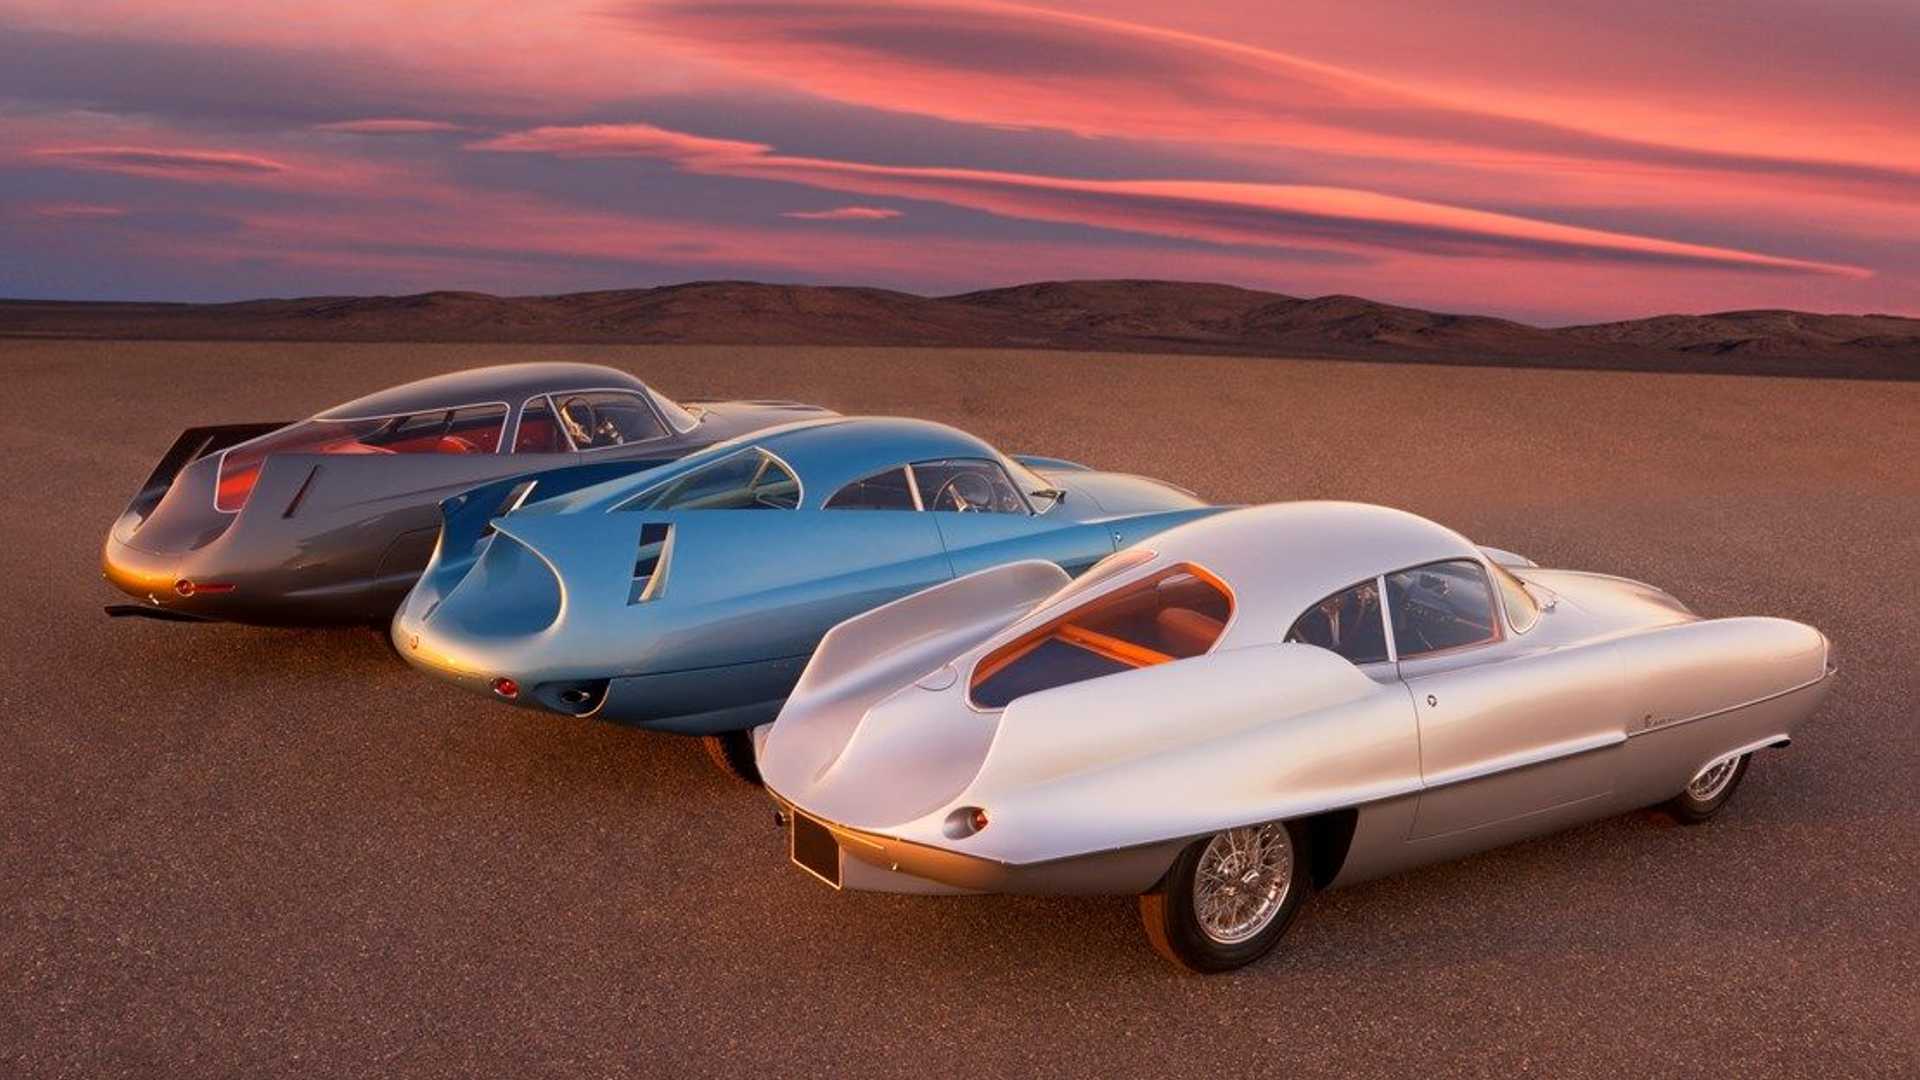 نمای سه چهارم عقب از سه خودروی مفهومی آلفا رومئو / Alfa Romeo B.A.T. Concept Car با رنگ های آبی و سفید و خاکستری